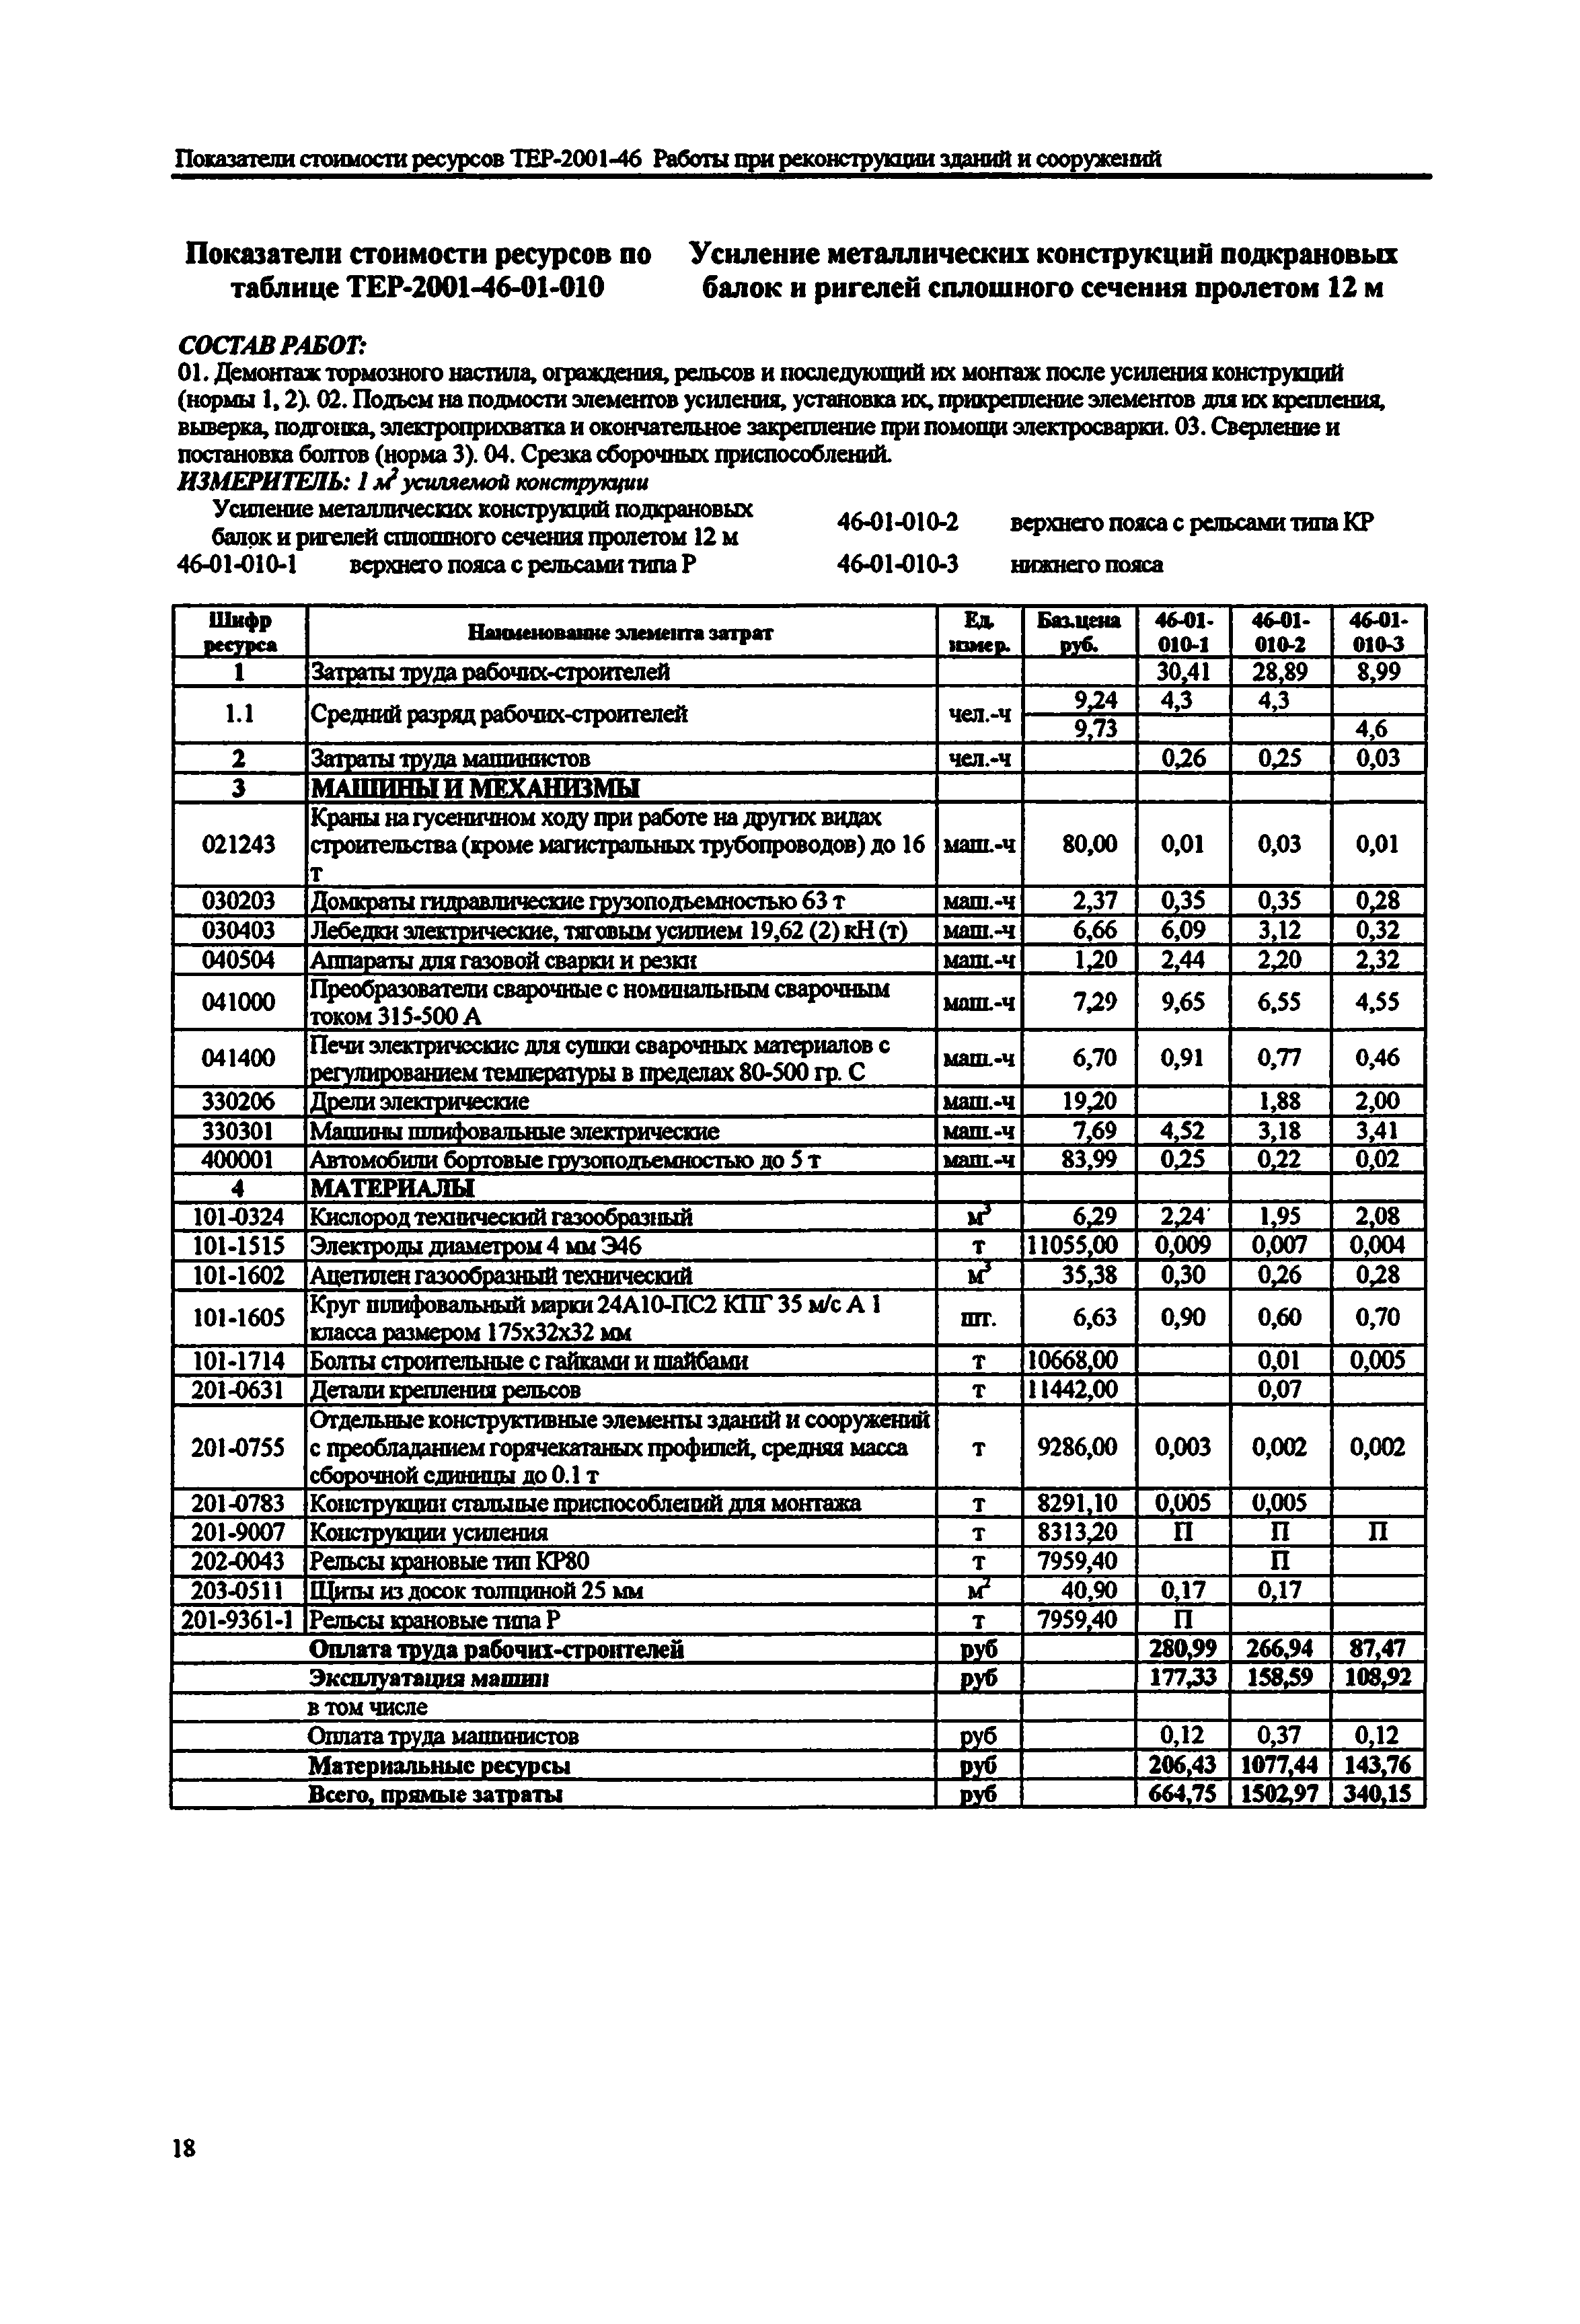 Справочное пособие к ТЕР 81-02-46-2001